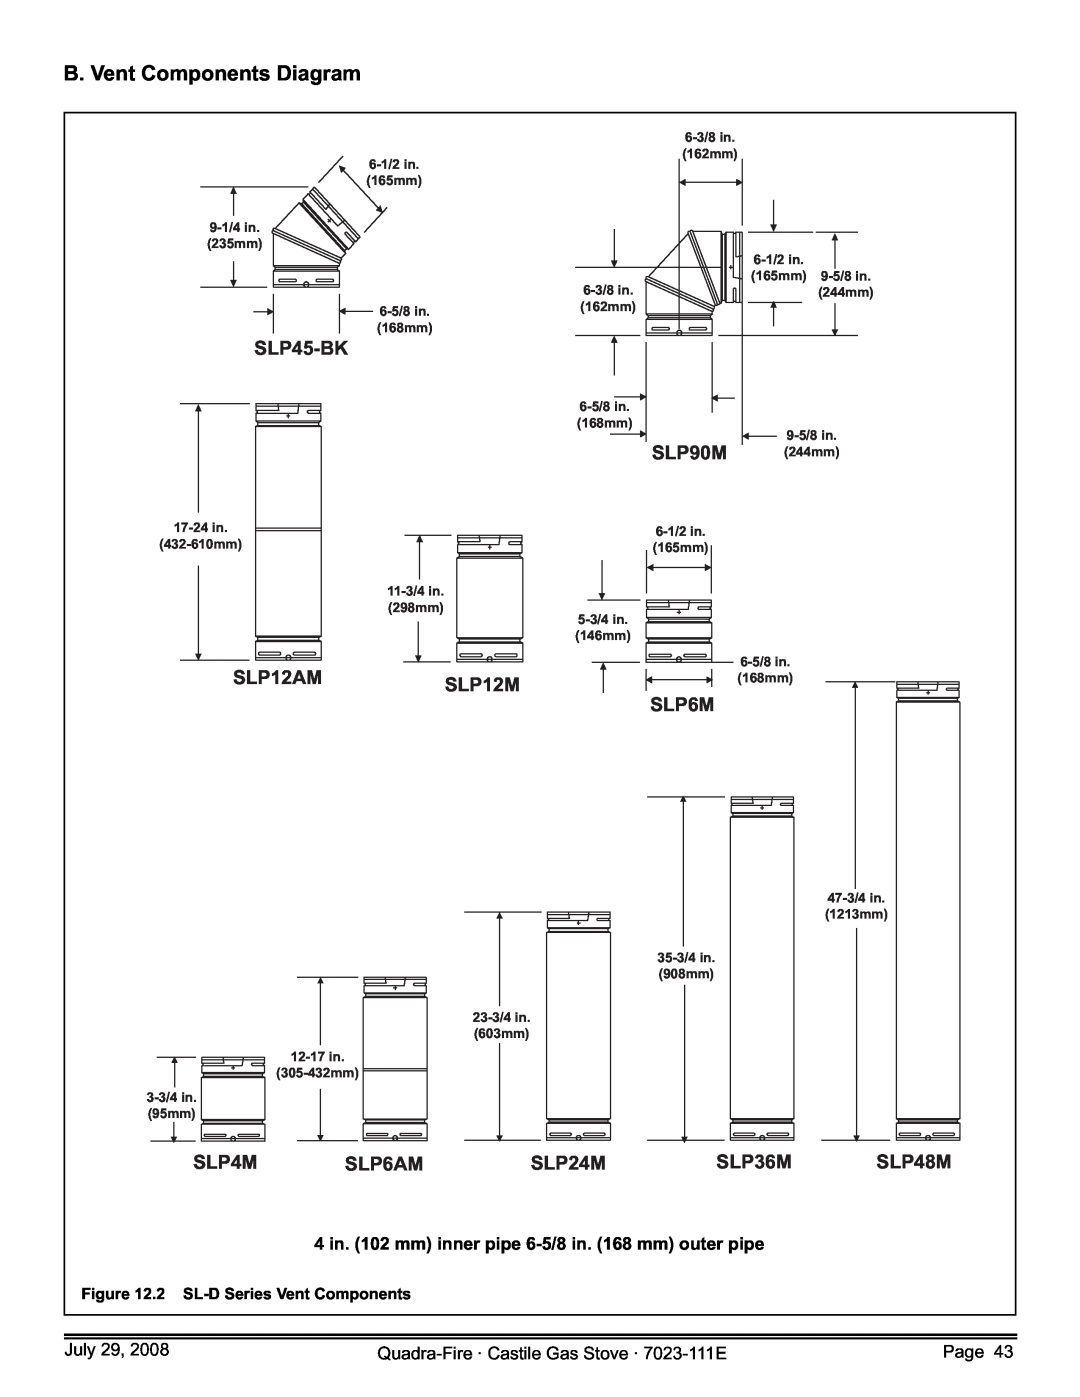 Quadra-Fire CASTILE-GAS-PMH B. Vent Components Diagram, SLP45-BK, SLP90M, SLP12AM, SLP12M, SLP4M, SLP6AM, SLP24M, SLP36M 